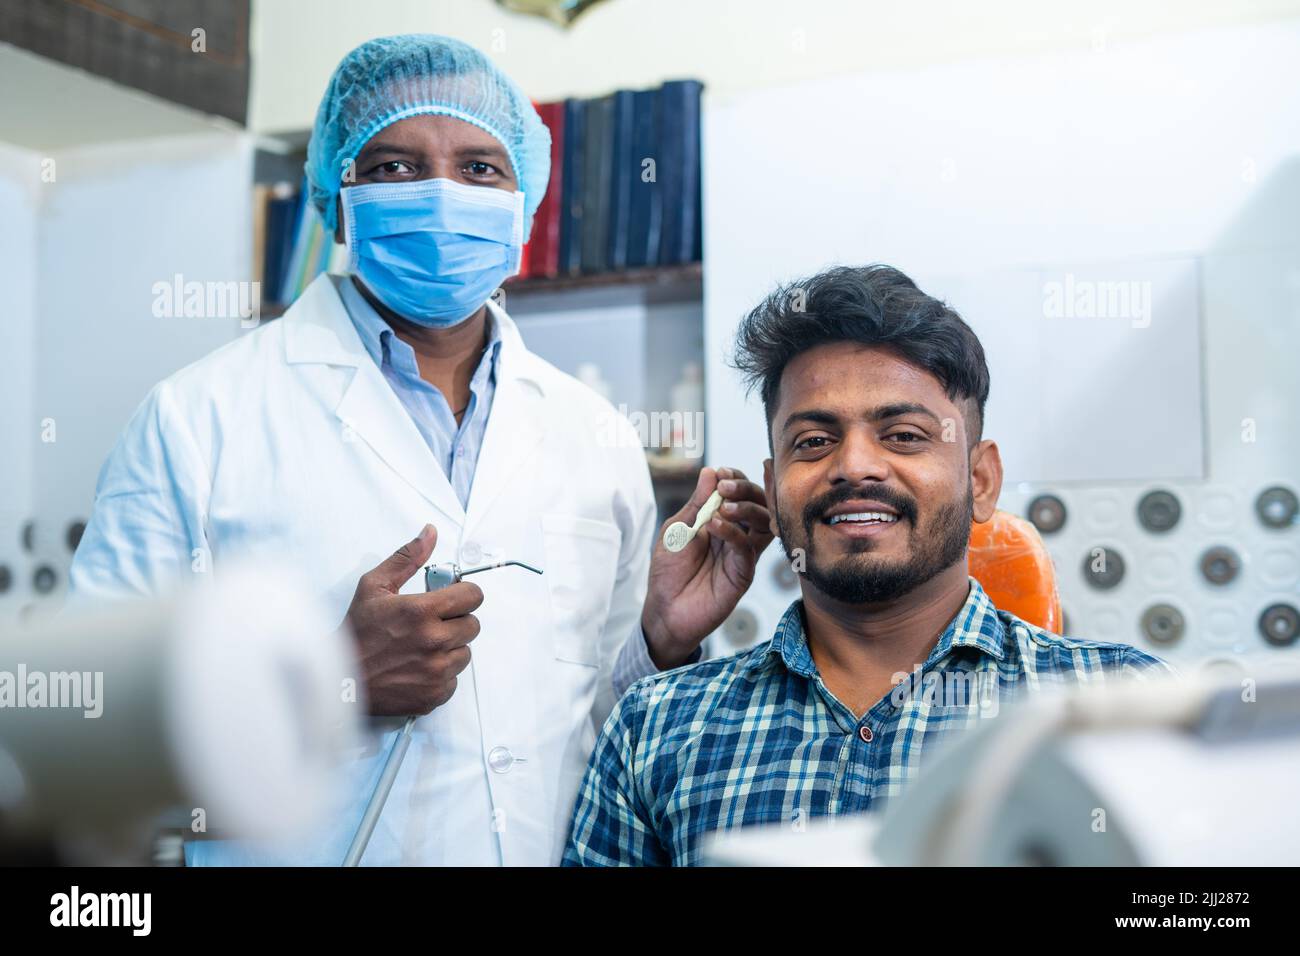 Prise de vue portrait d'un patient souriant heureux avec un dentiste ou un dentiste avec un masque facial médical à l'hospice regardant la caméra - concept de soins buccaux Banque D'Images